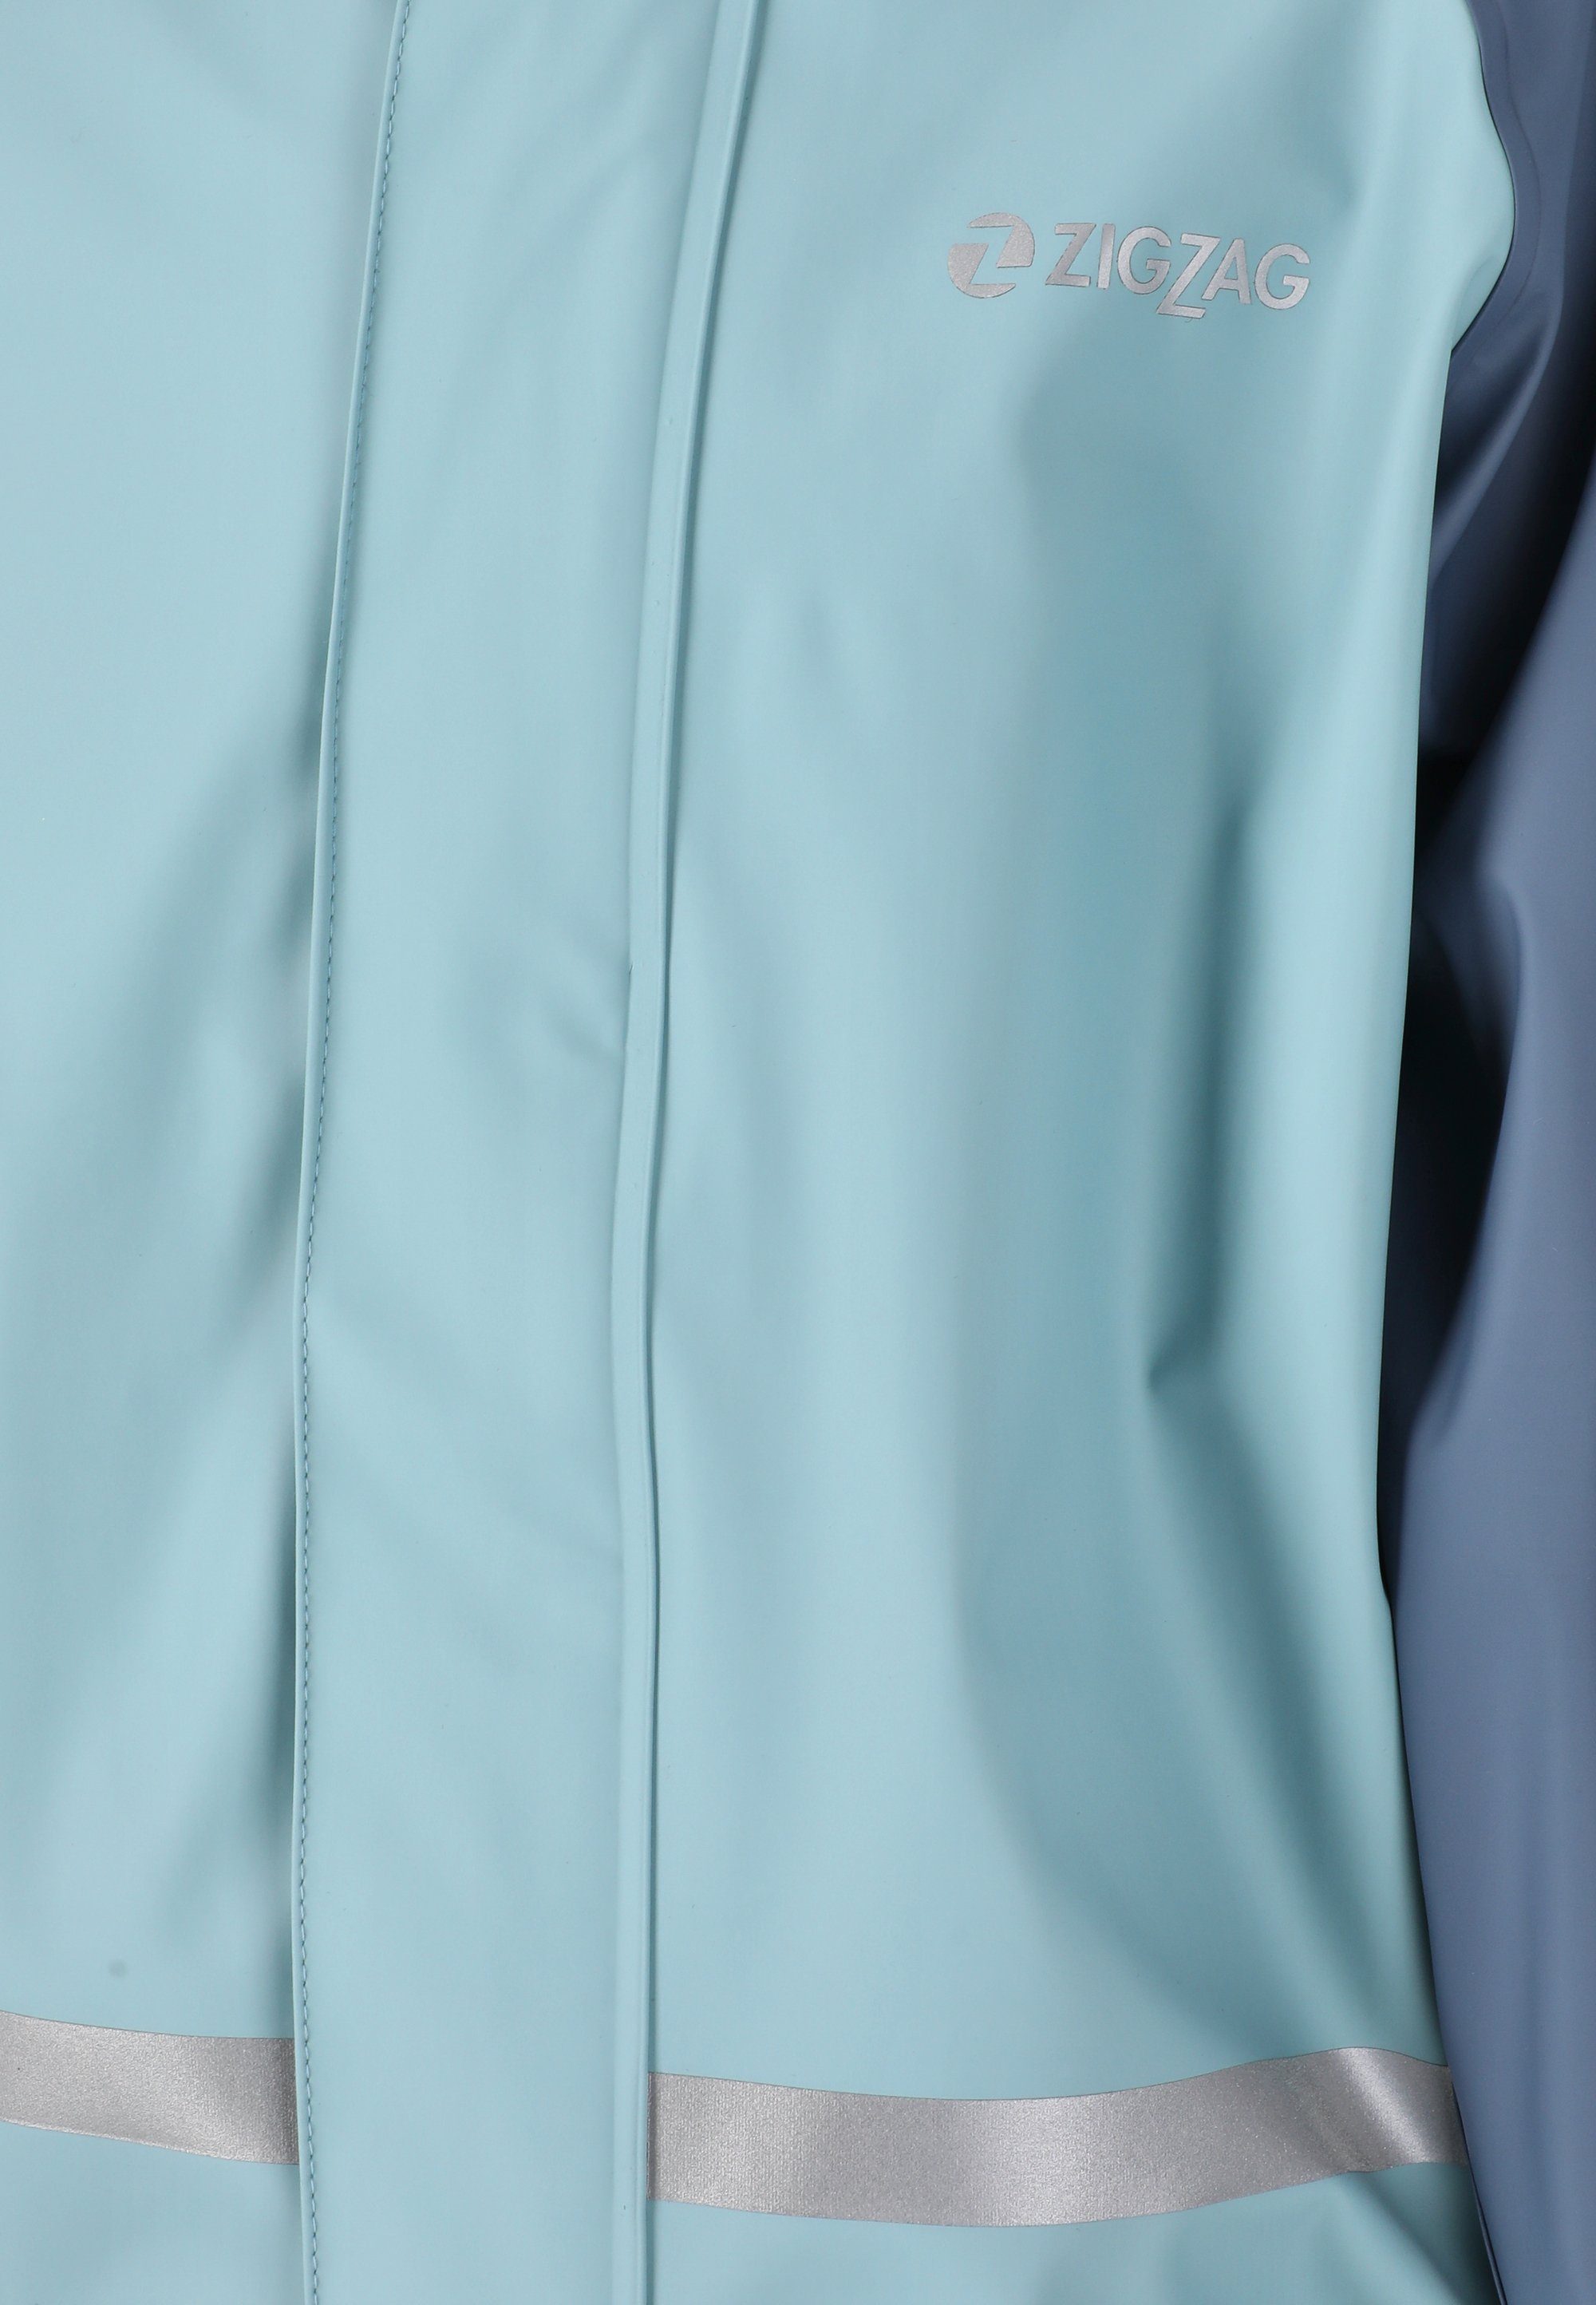 ZIGZAG GILBO, mit Regenanzug reflektierenden blau Elementen